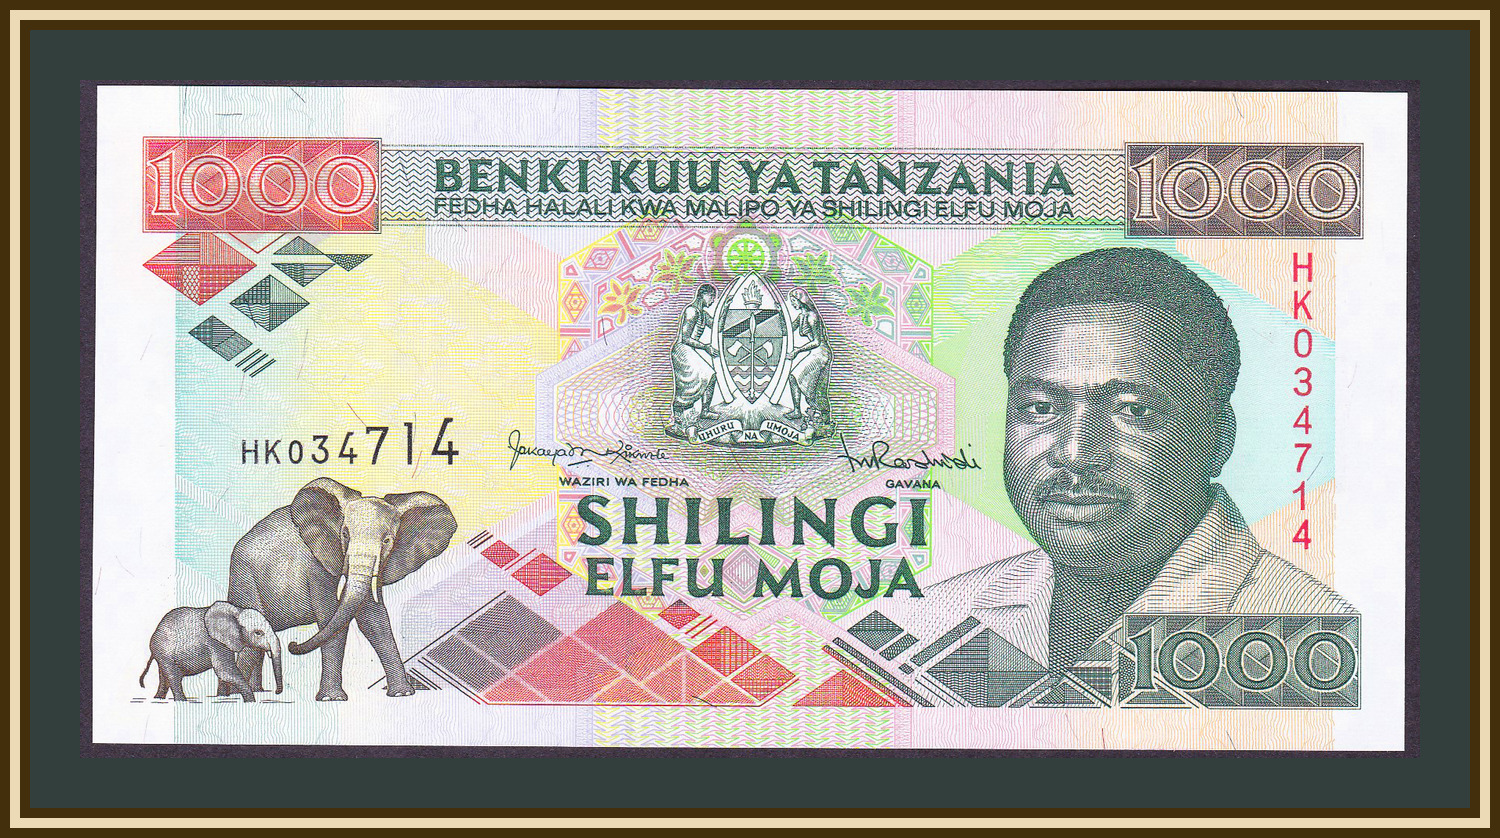 1993 p. Танзания 1000 шиллингов с днём рождения!.